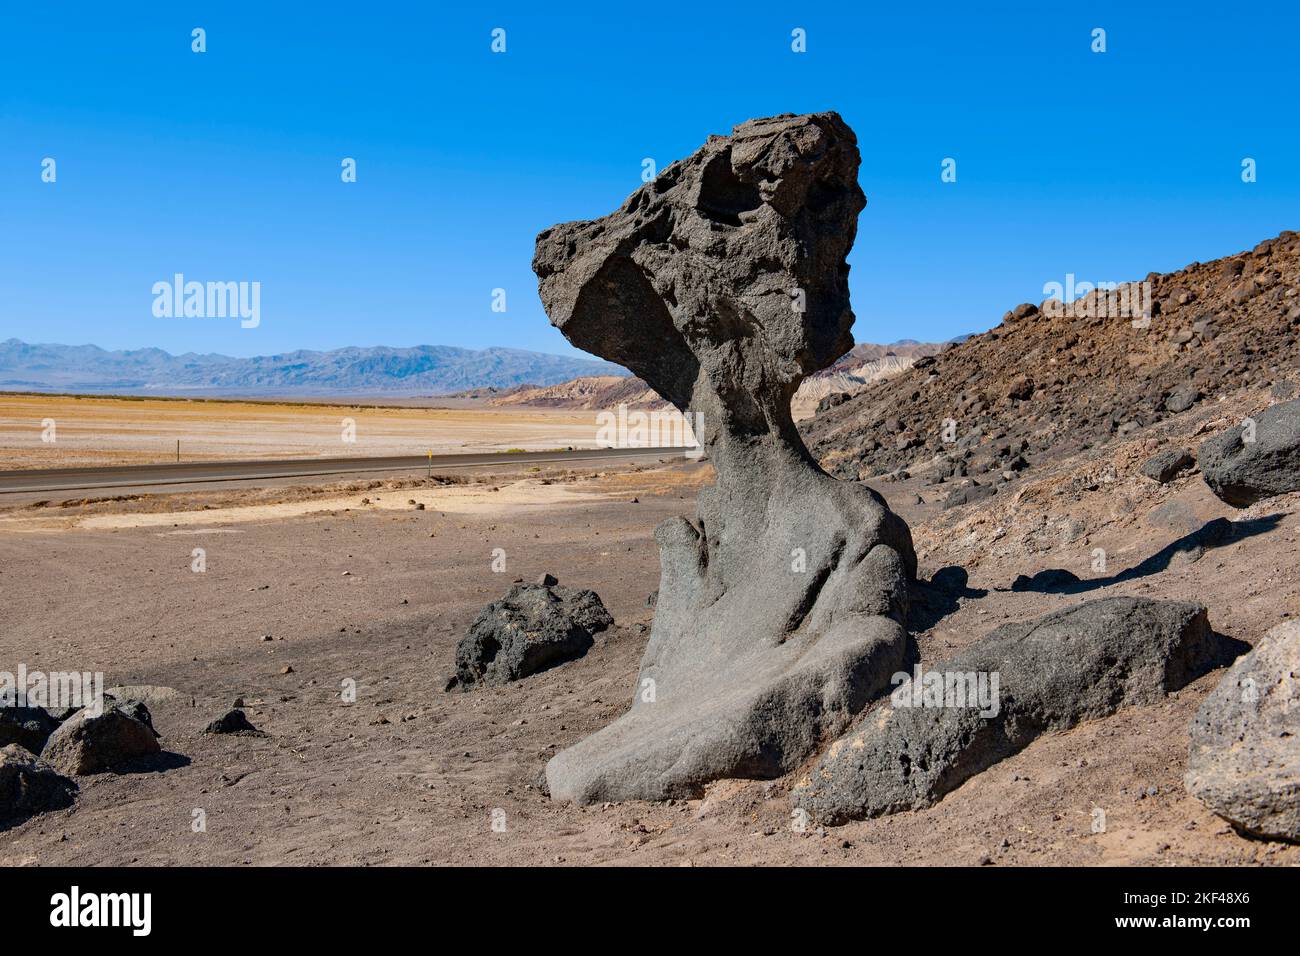 Felsformation Mushroom Rock, Death Valley Nationalpark, Kalifornien, USA, Nordamerika Stock Photo